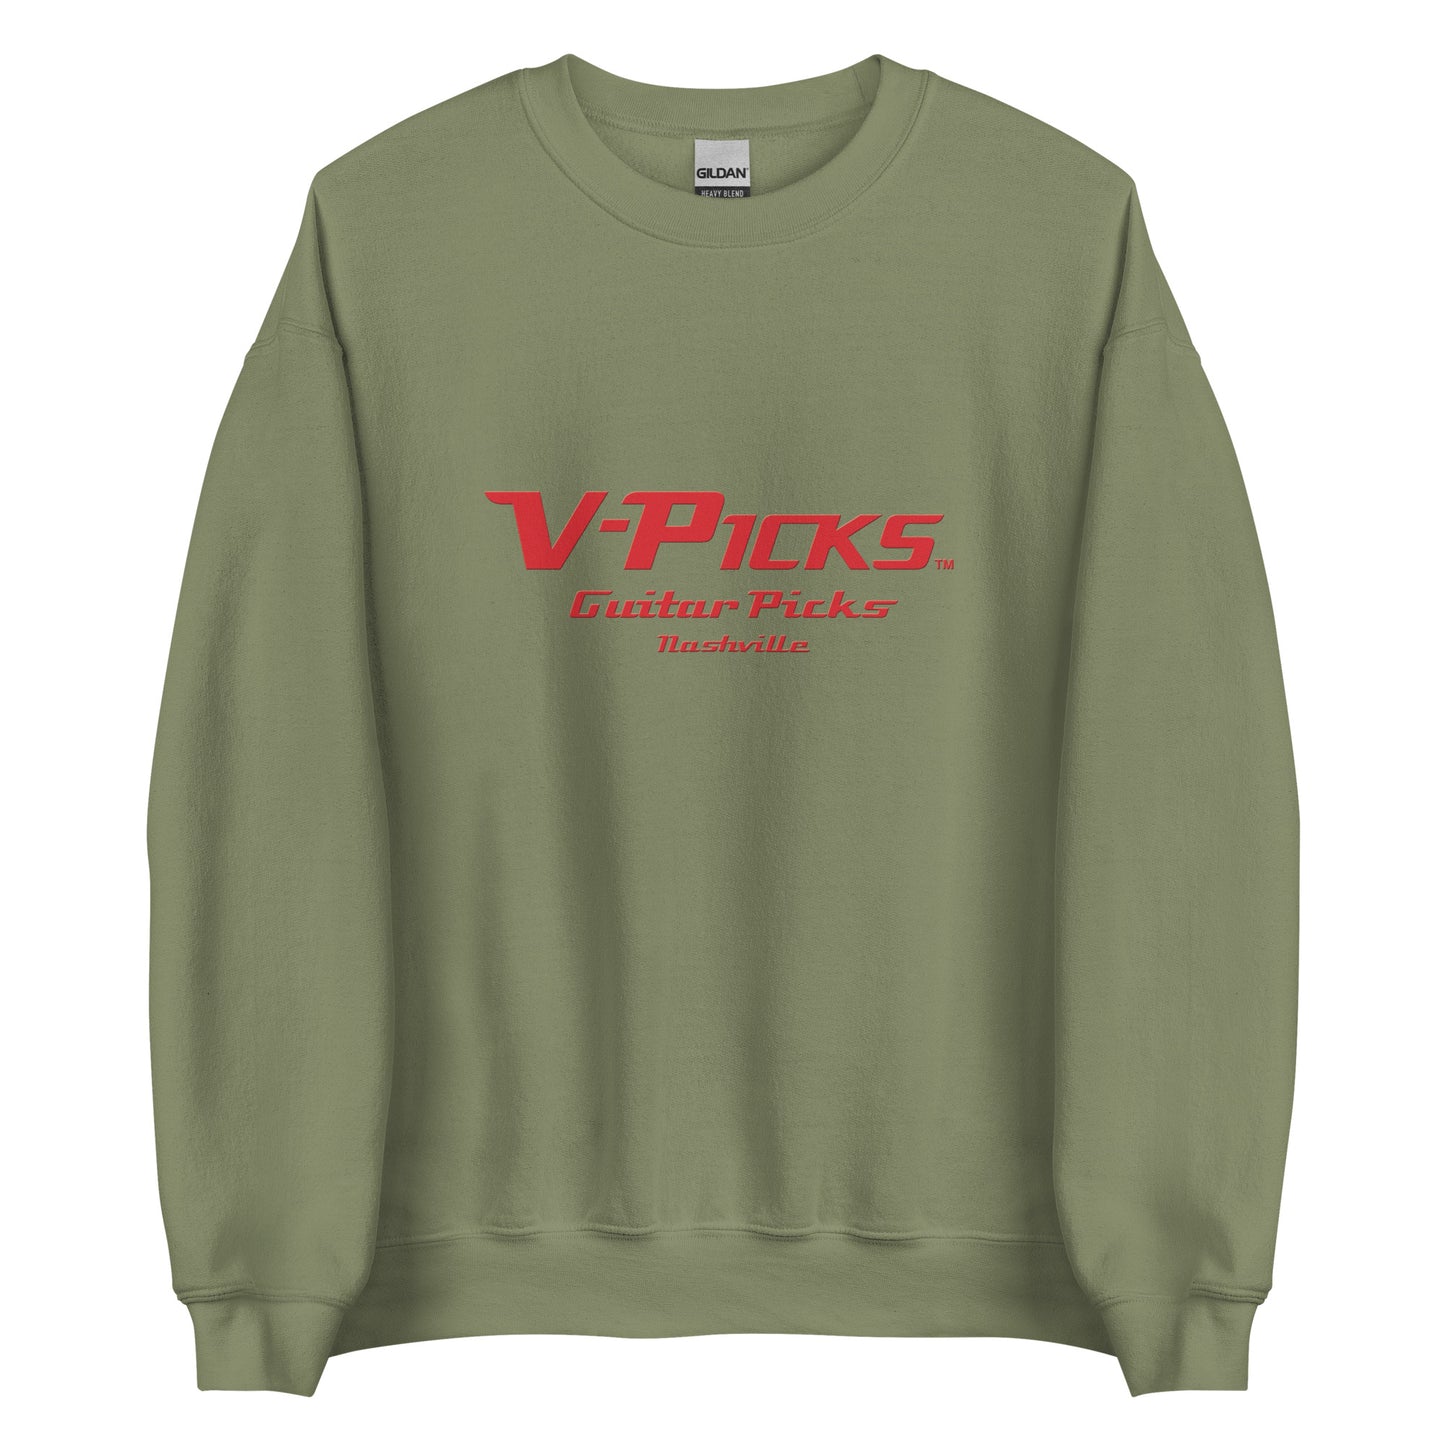 V-PICKS Classic Logo Sweatshirt